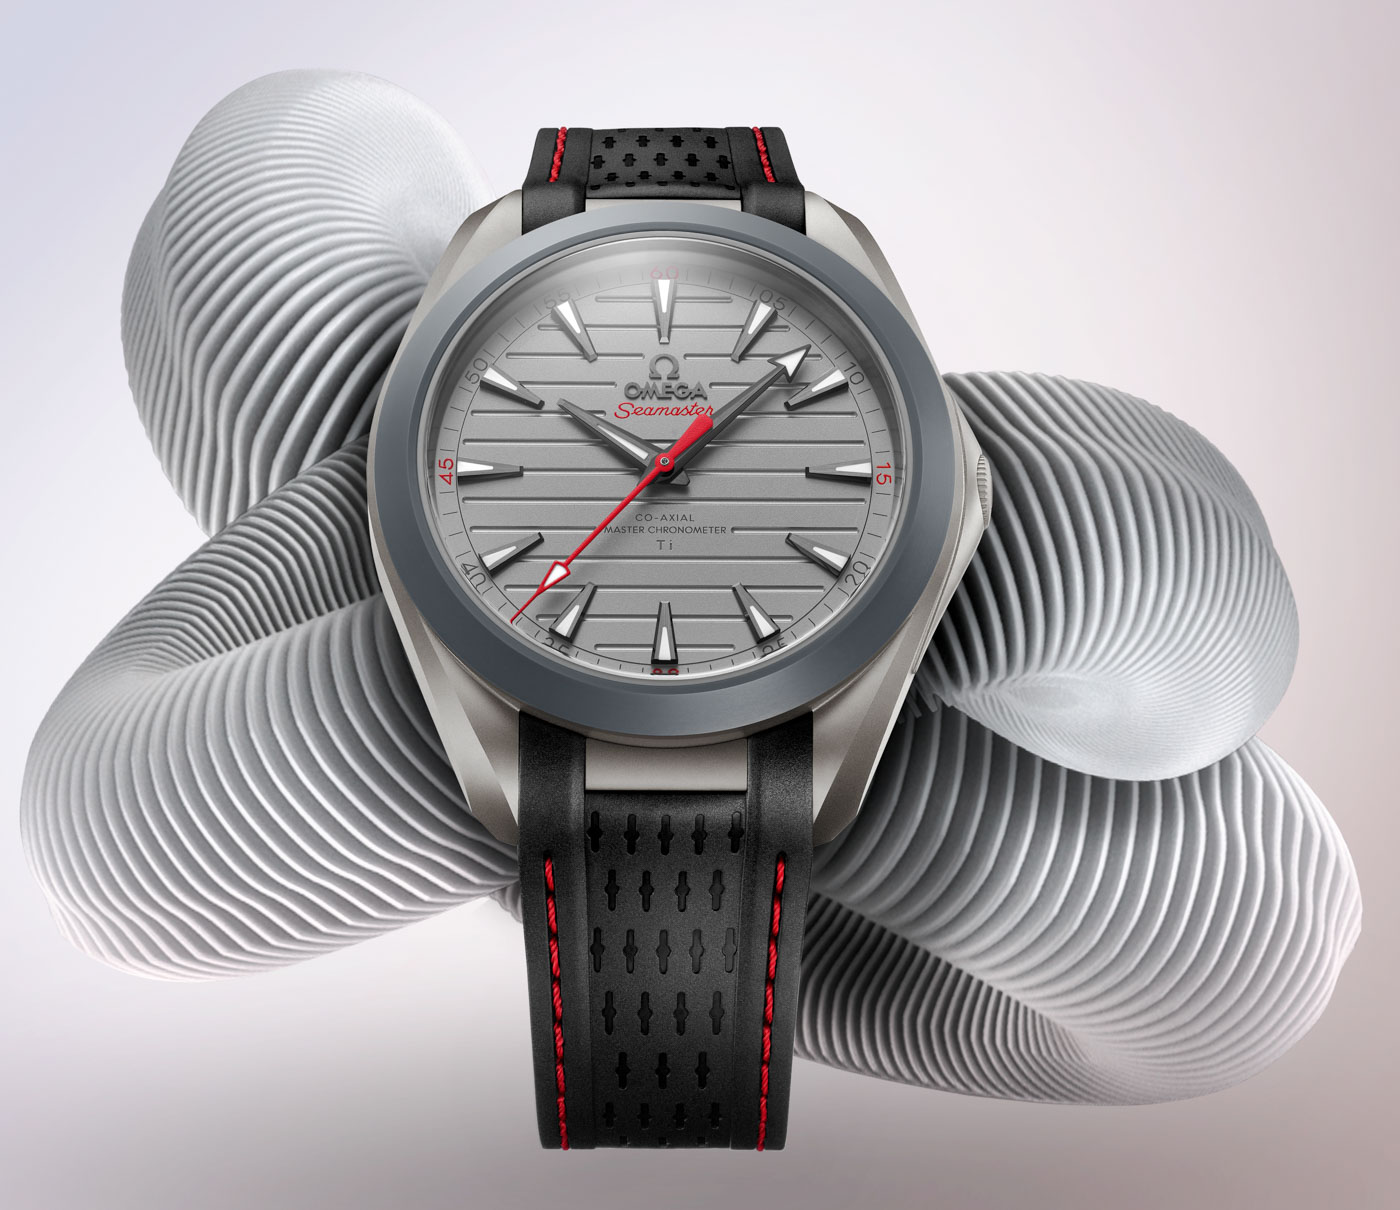 titanium omega watch